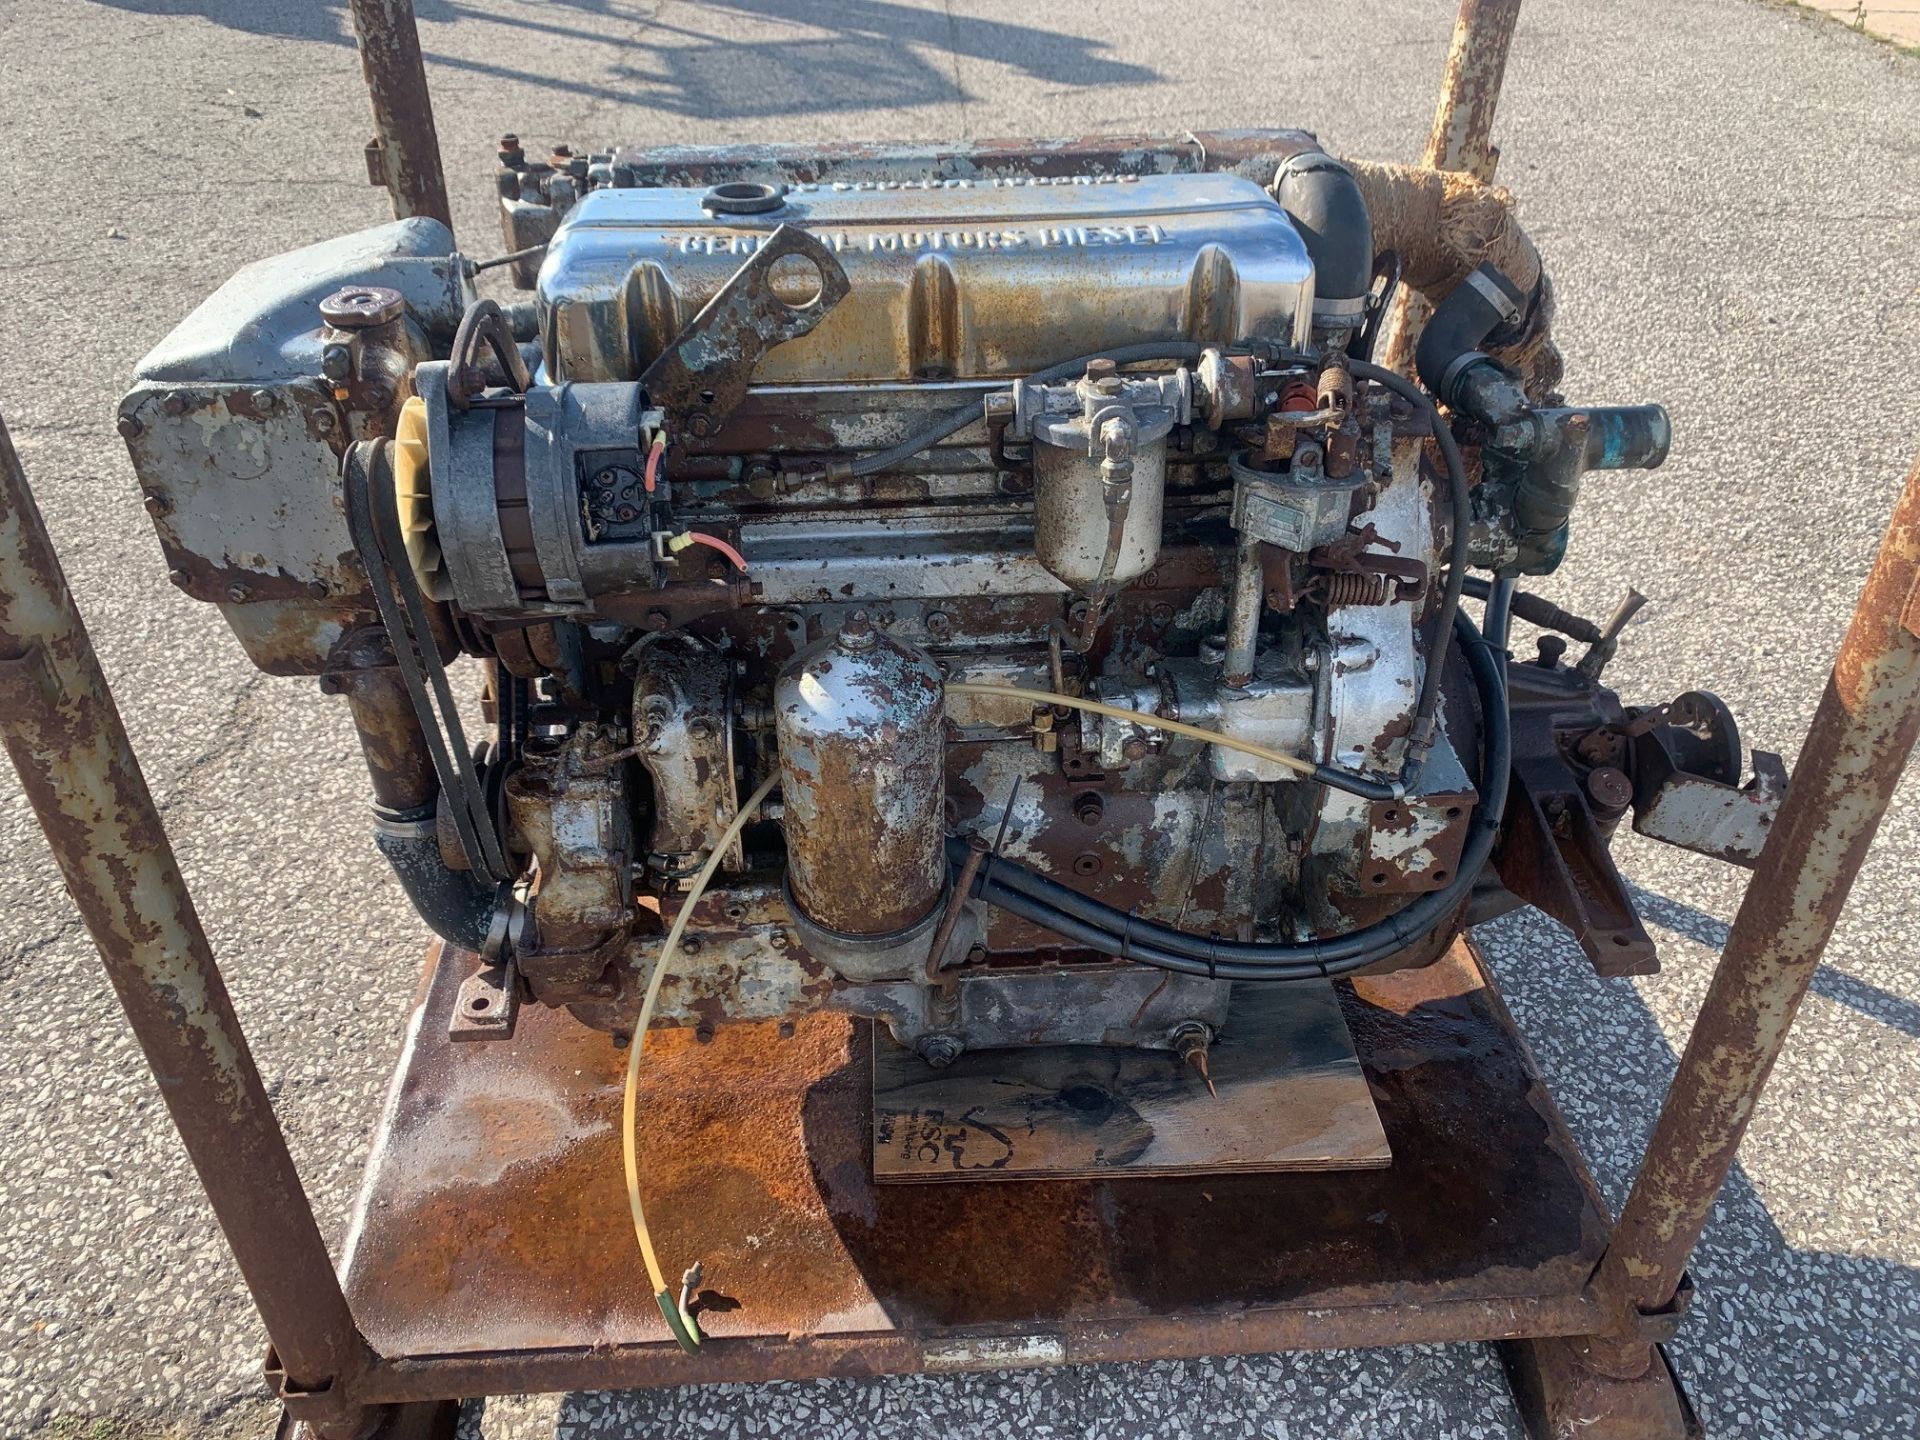 GM Detroit 453 Marine Diesel Engine: